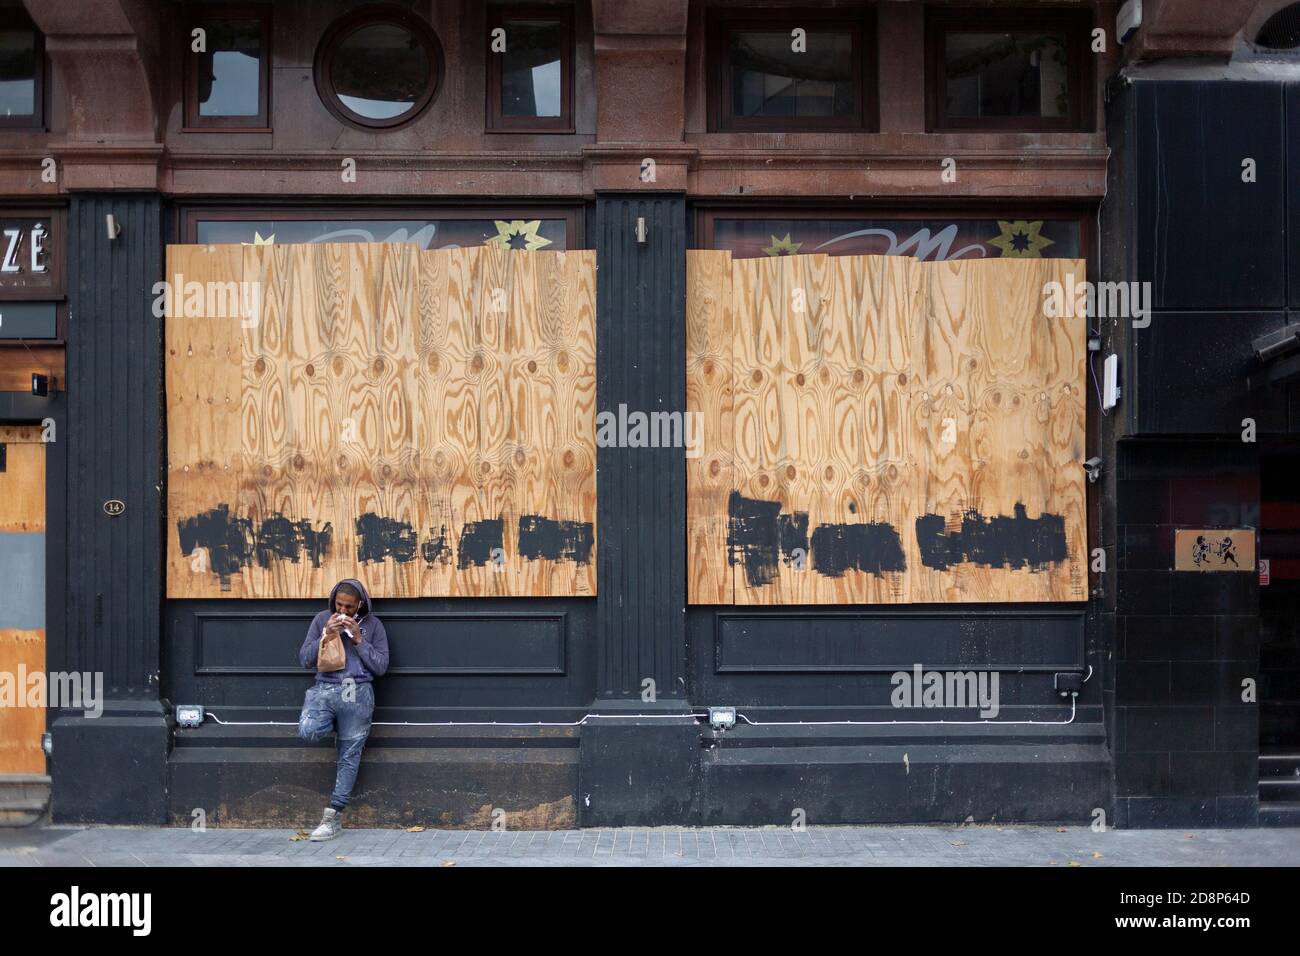 Un travailleur manuel, masculin, se tient à l'extérieur d'un restaurant à bord en train de manger son déjeuner pendant la pandémie de COVID de 2020. Leicester Square, Londres, Angleterre, Royaume-Uni Banque D'Images